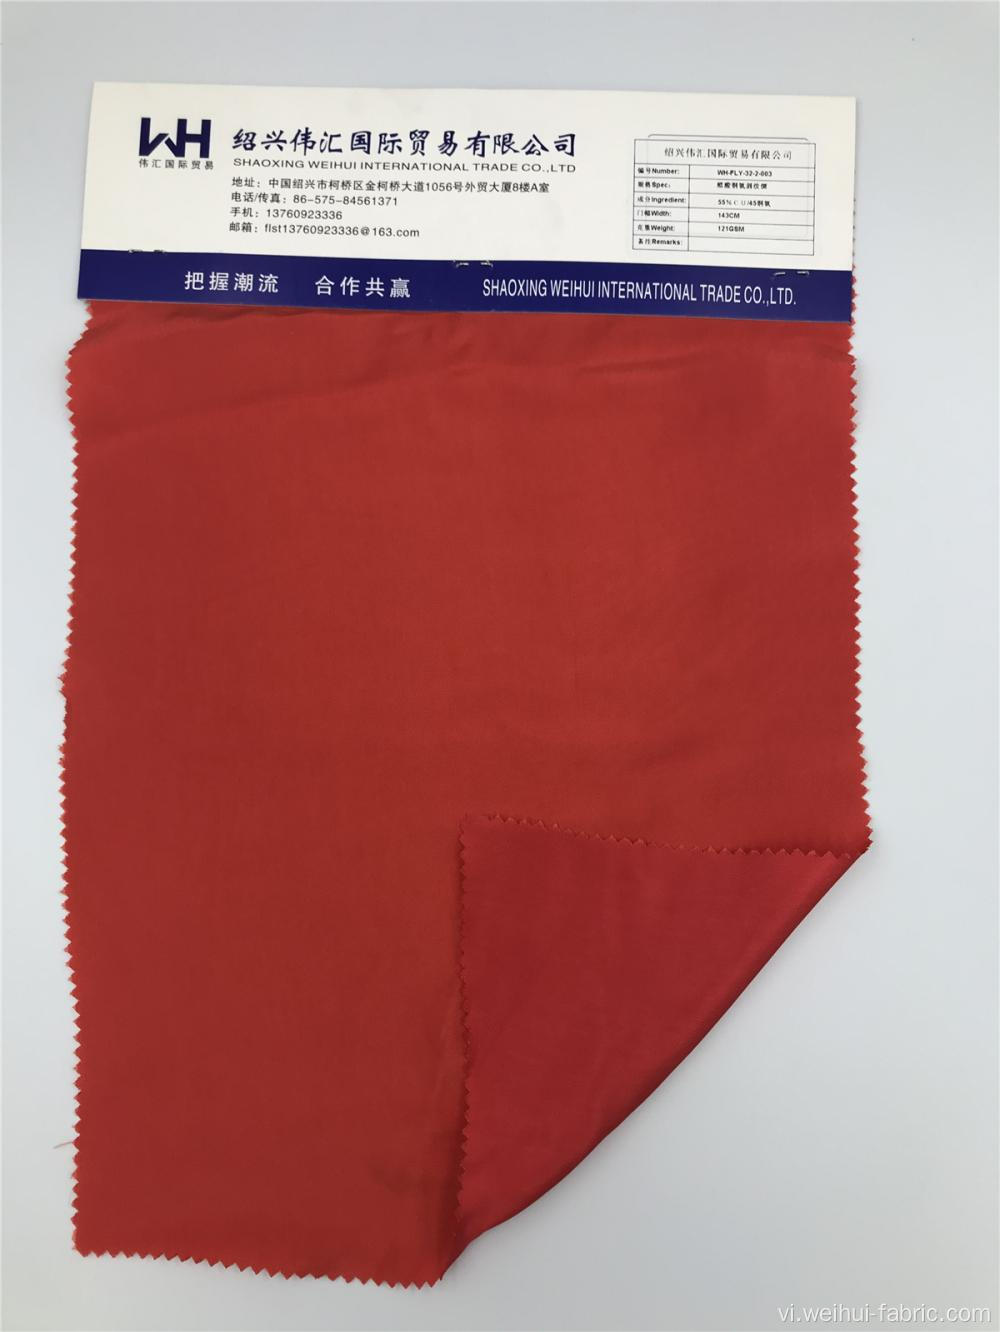 Vải dệt thoi C / CU trơn màu đỏ chống tĩnh điện